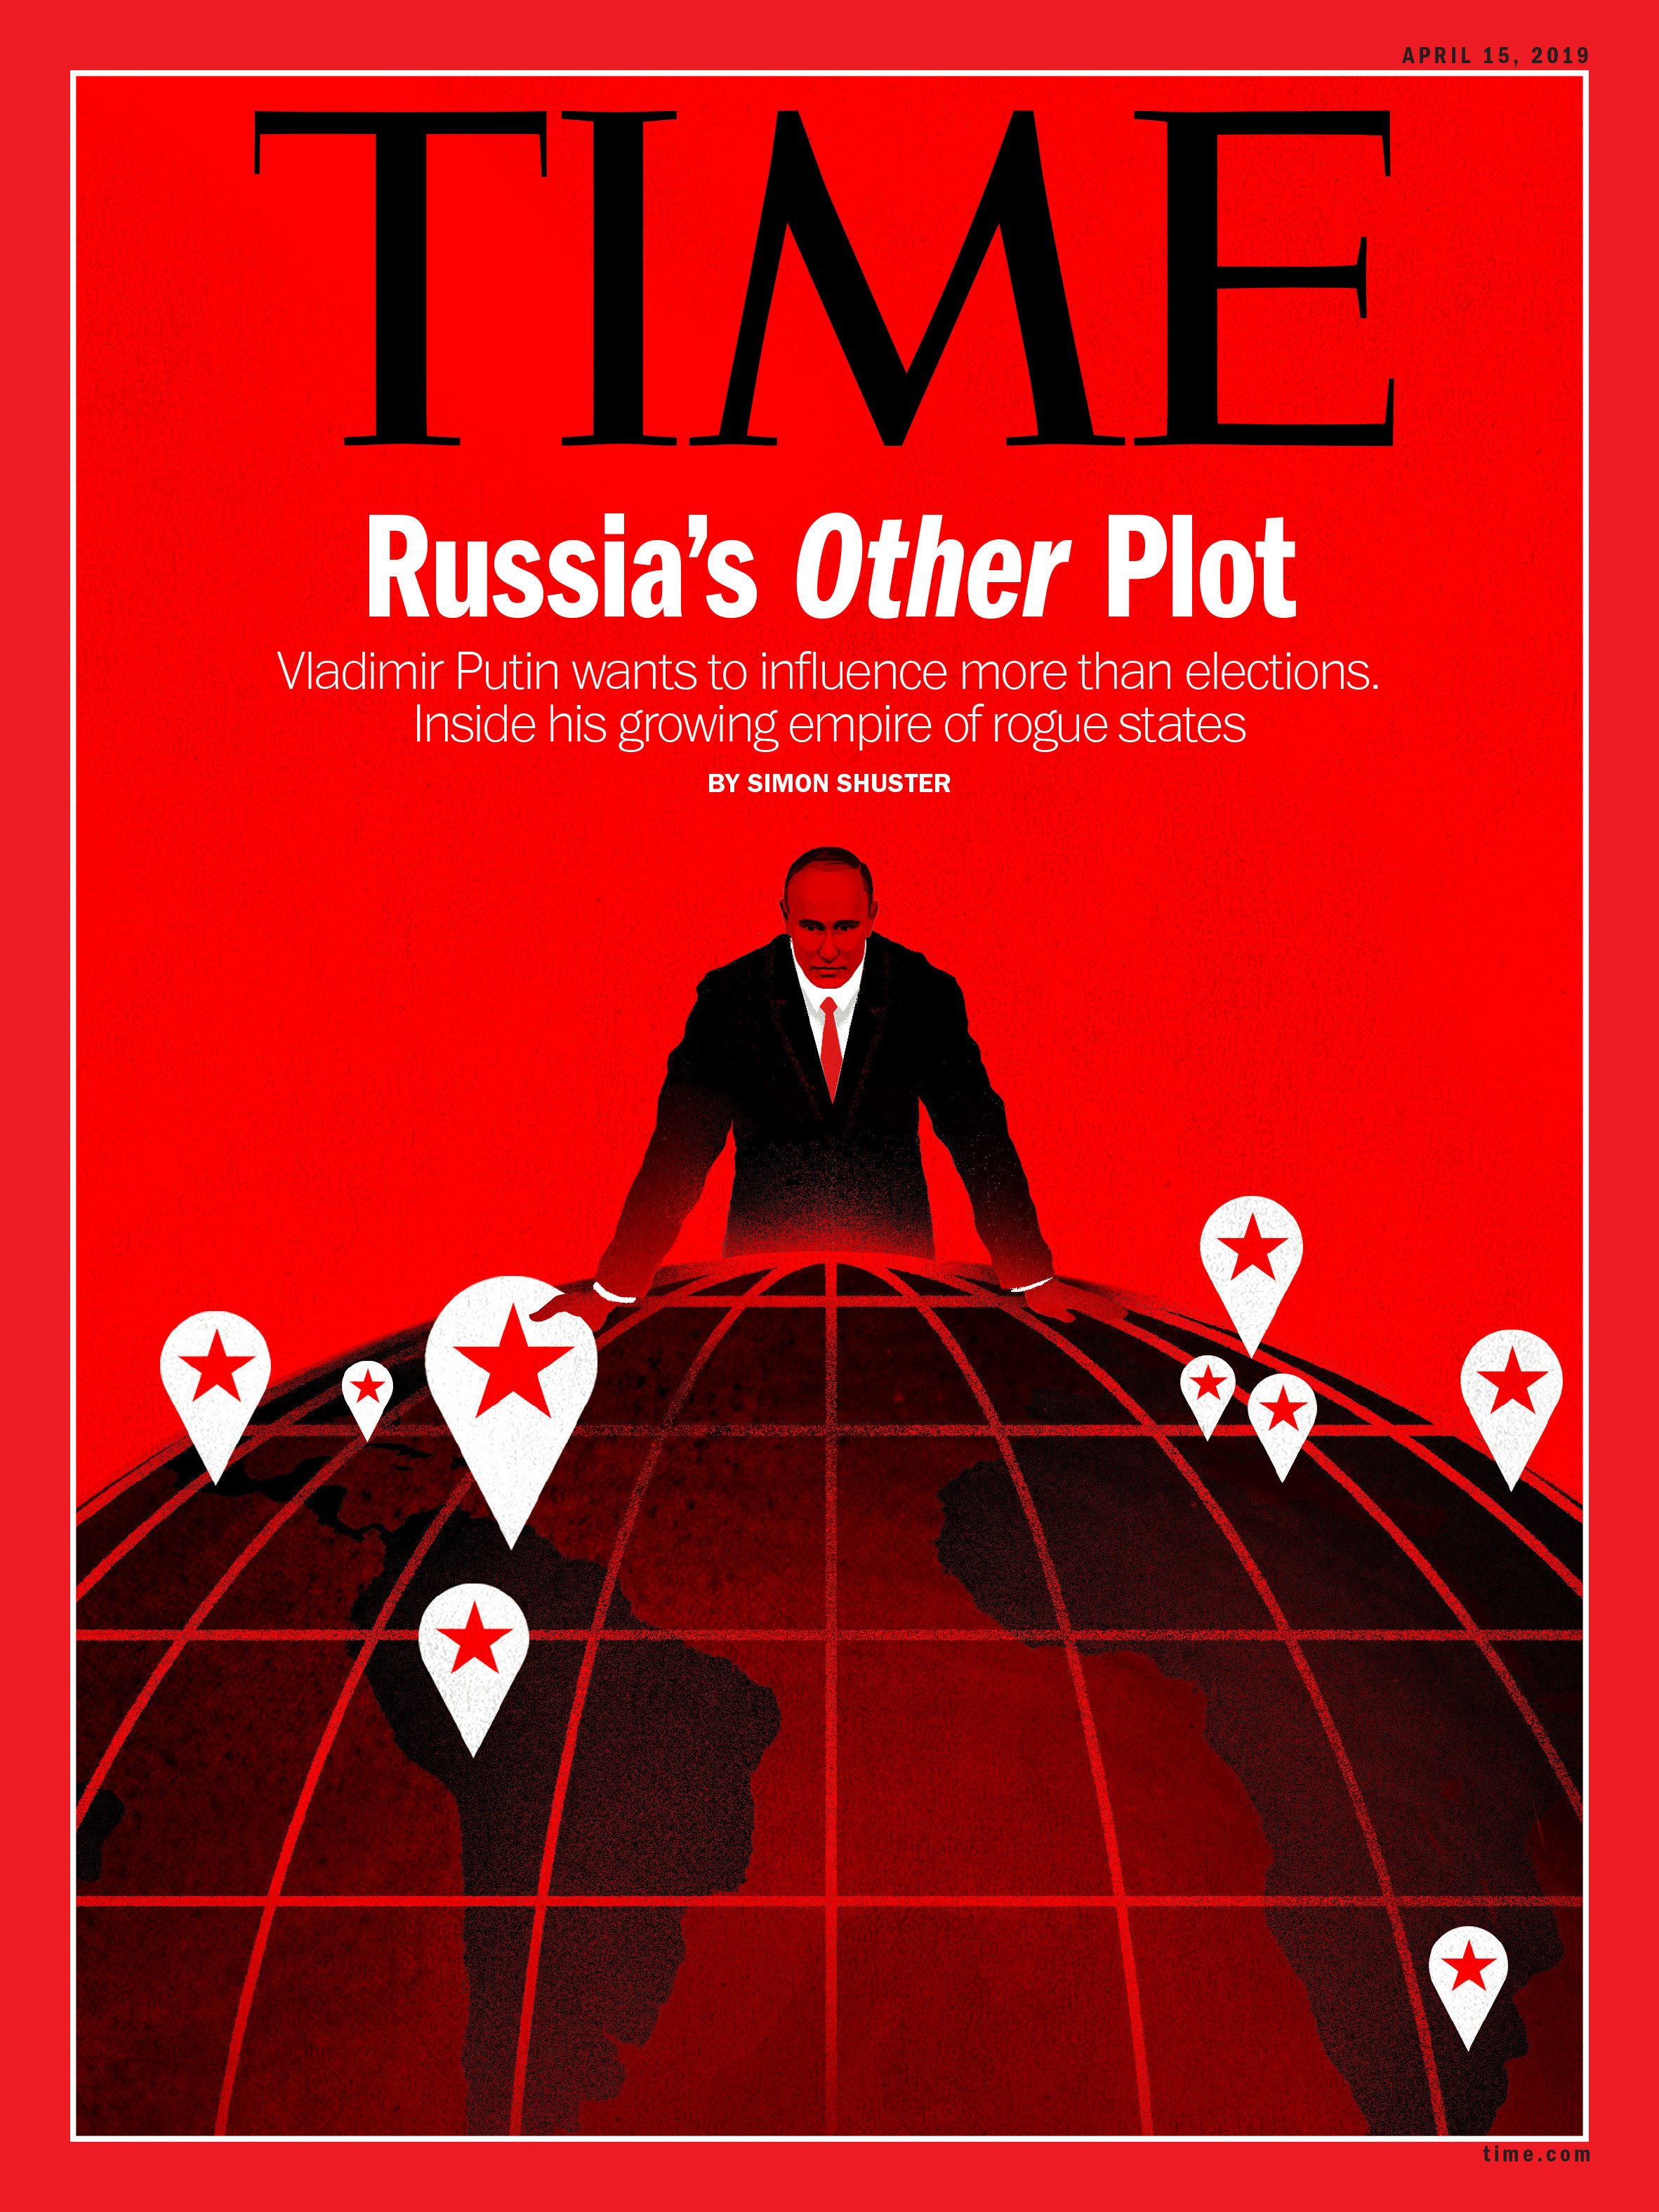 Обложка нового журнала. Обложка журнала тайм с Путиным. Time журнал обложка Путина.